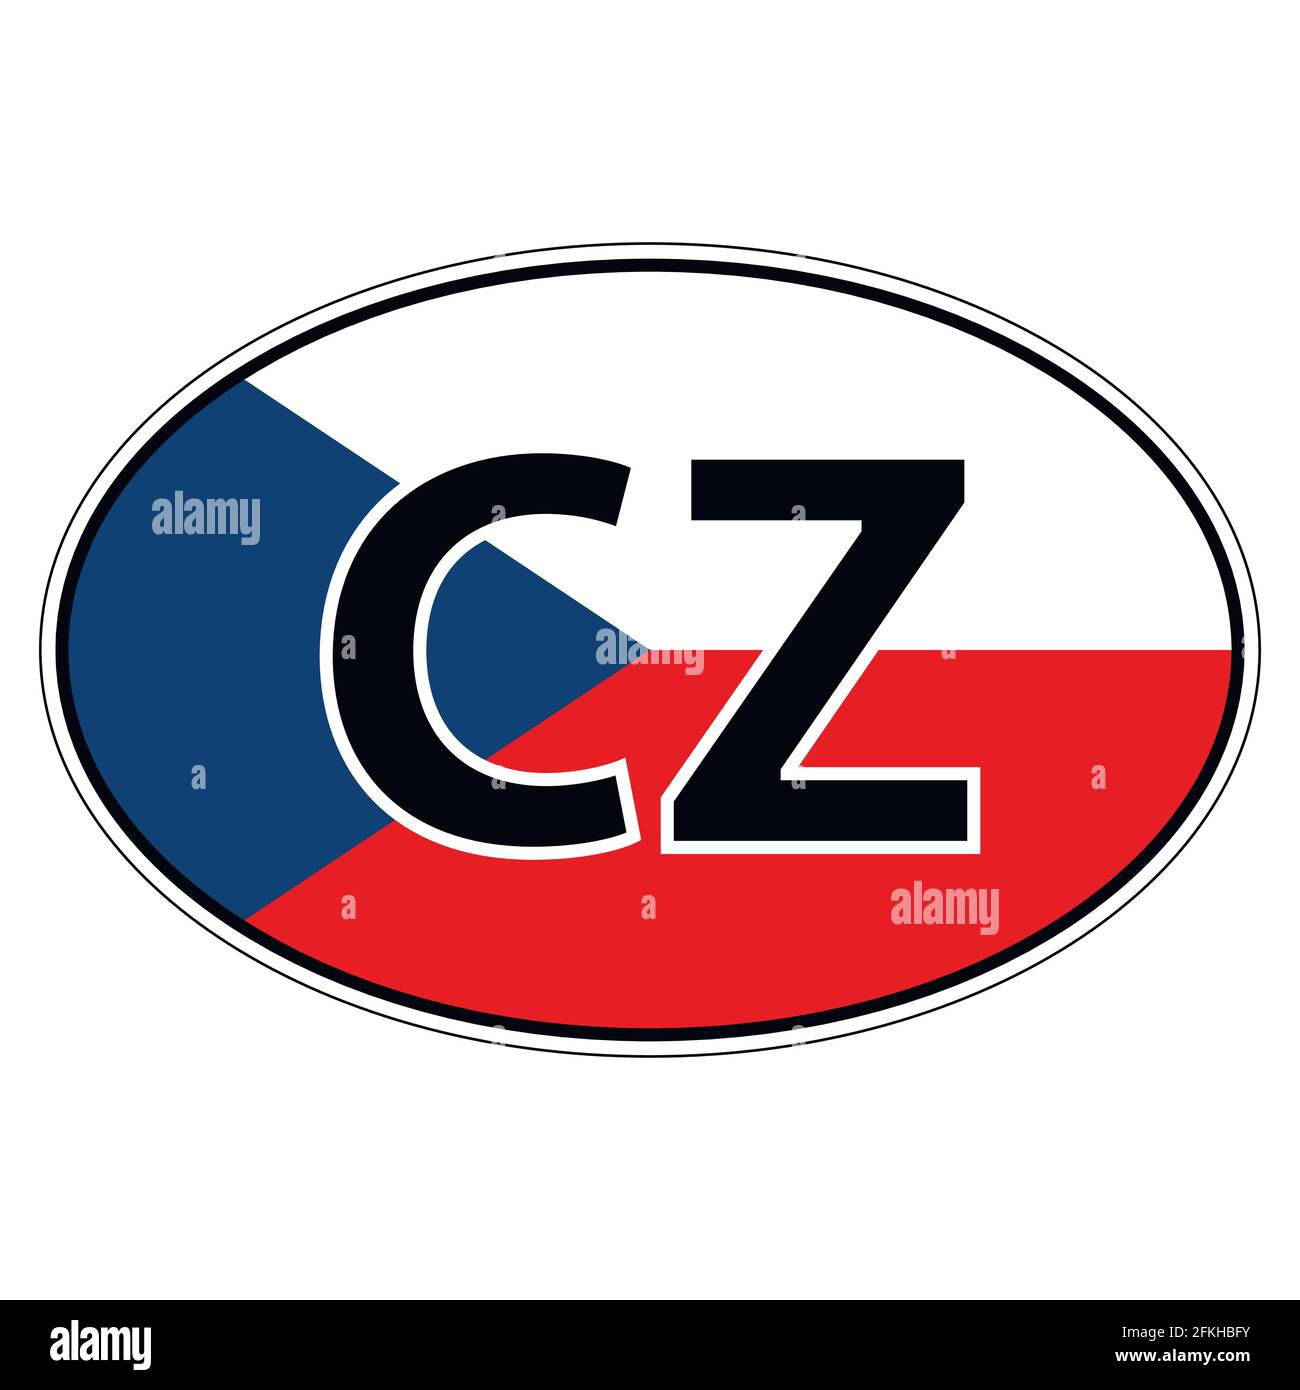 Sticker on car, flag Czechia, Chech, Czech Republic Stock Vector